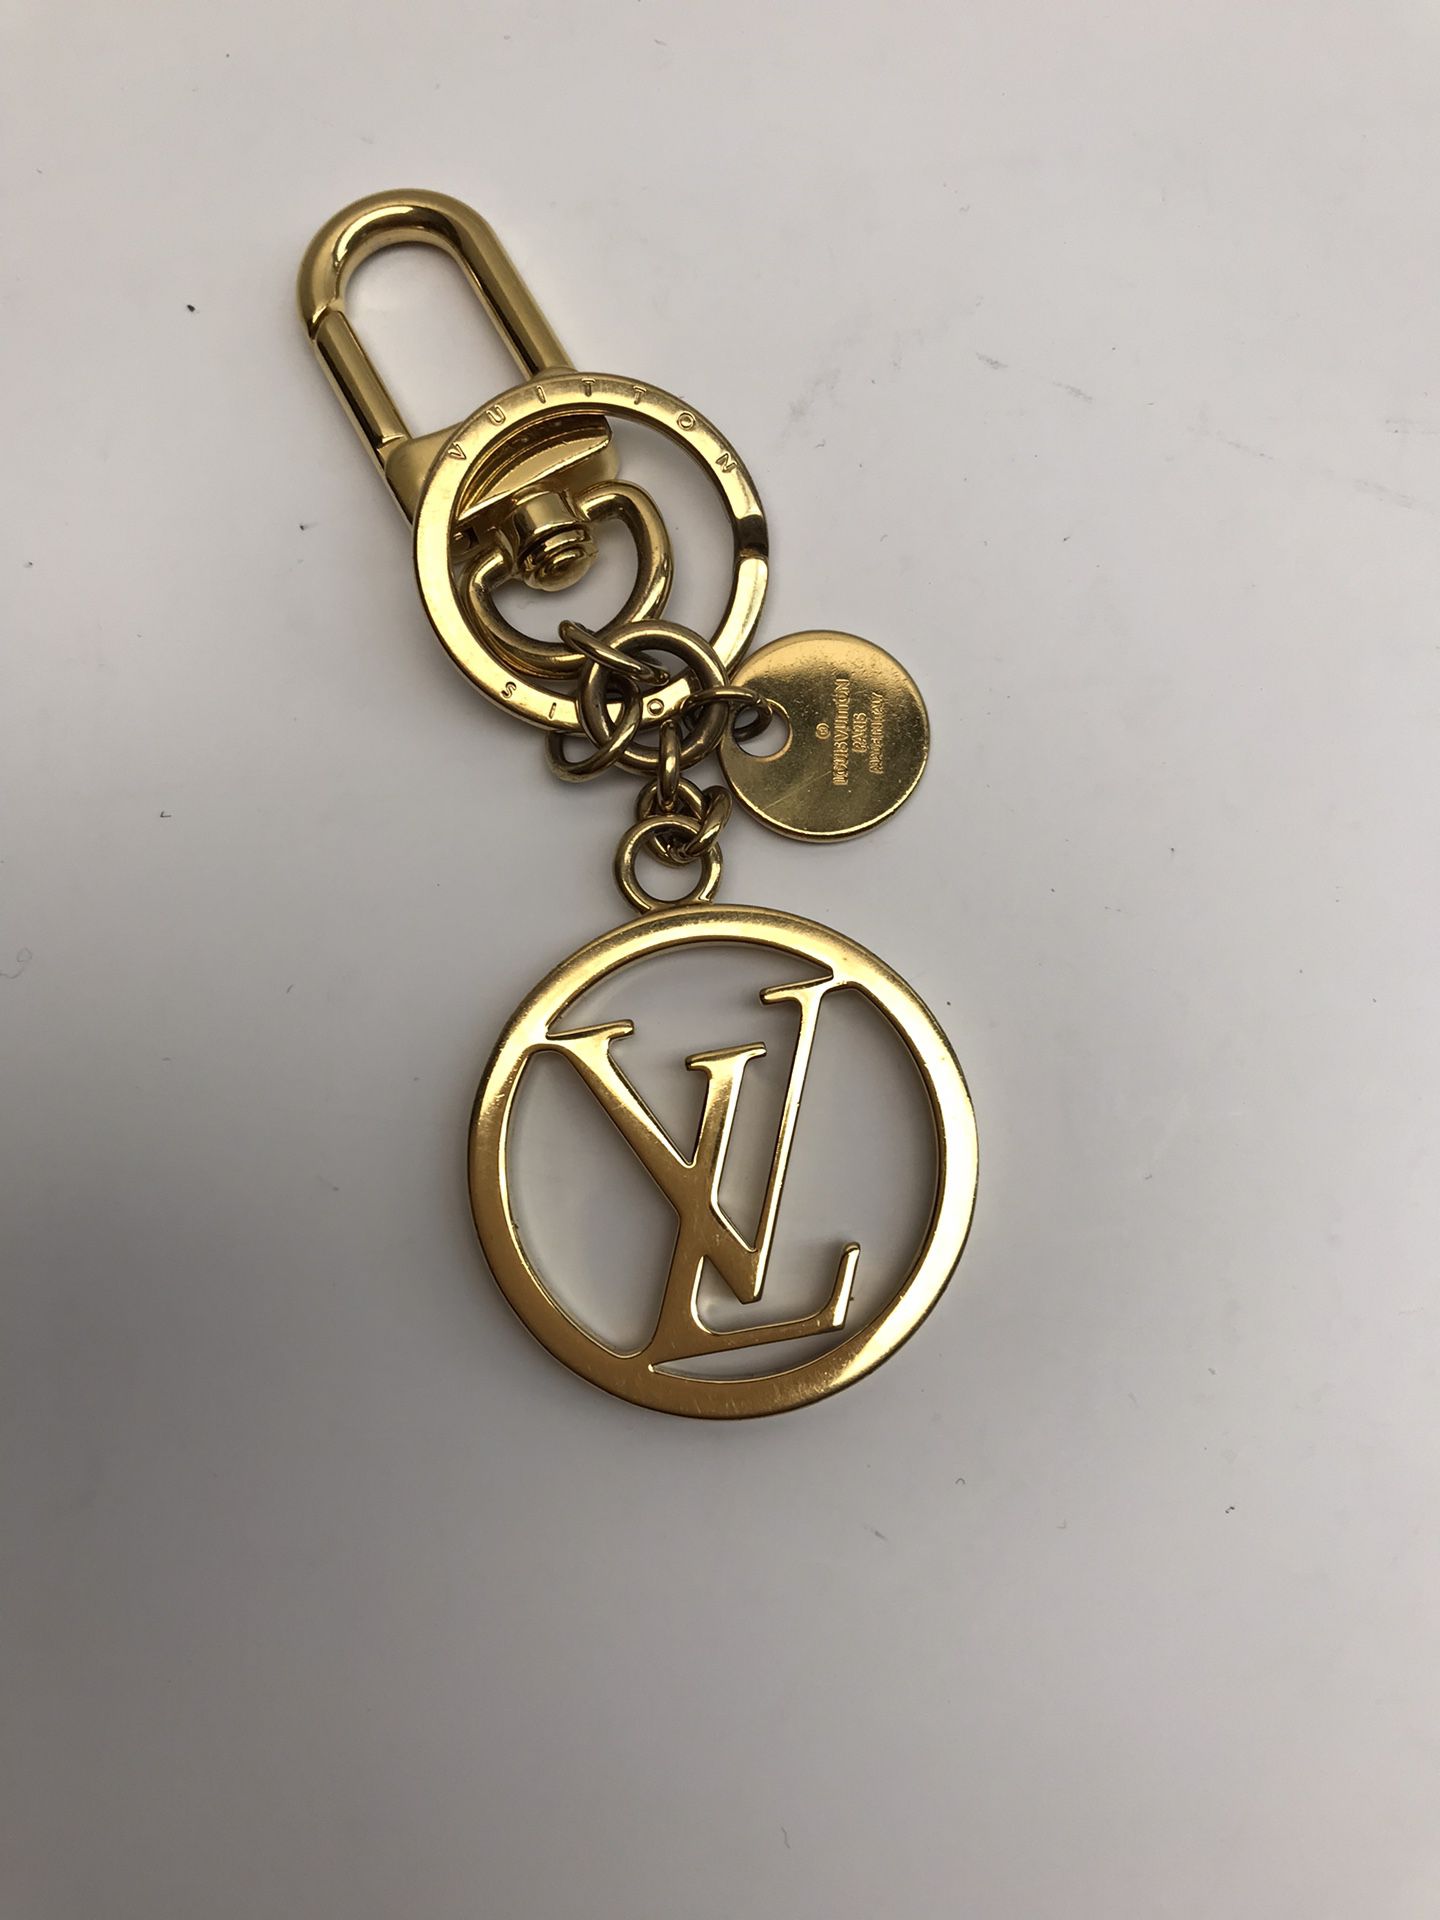 Louis Vuitton Keychain sale